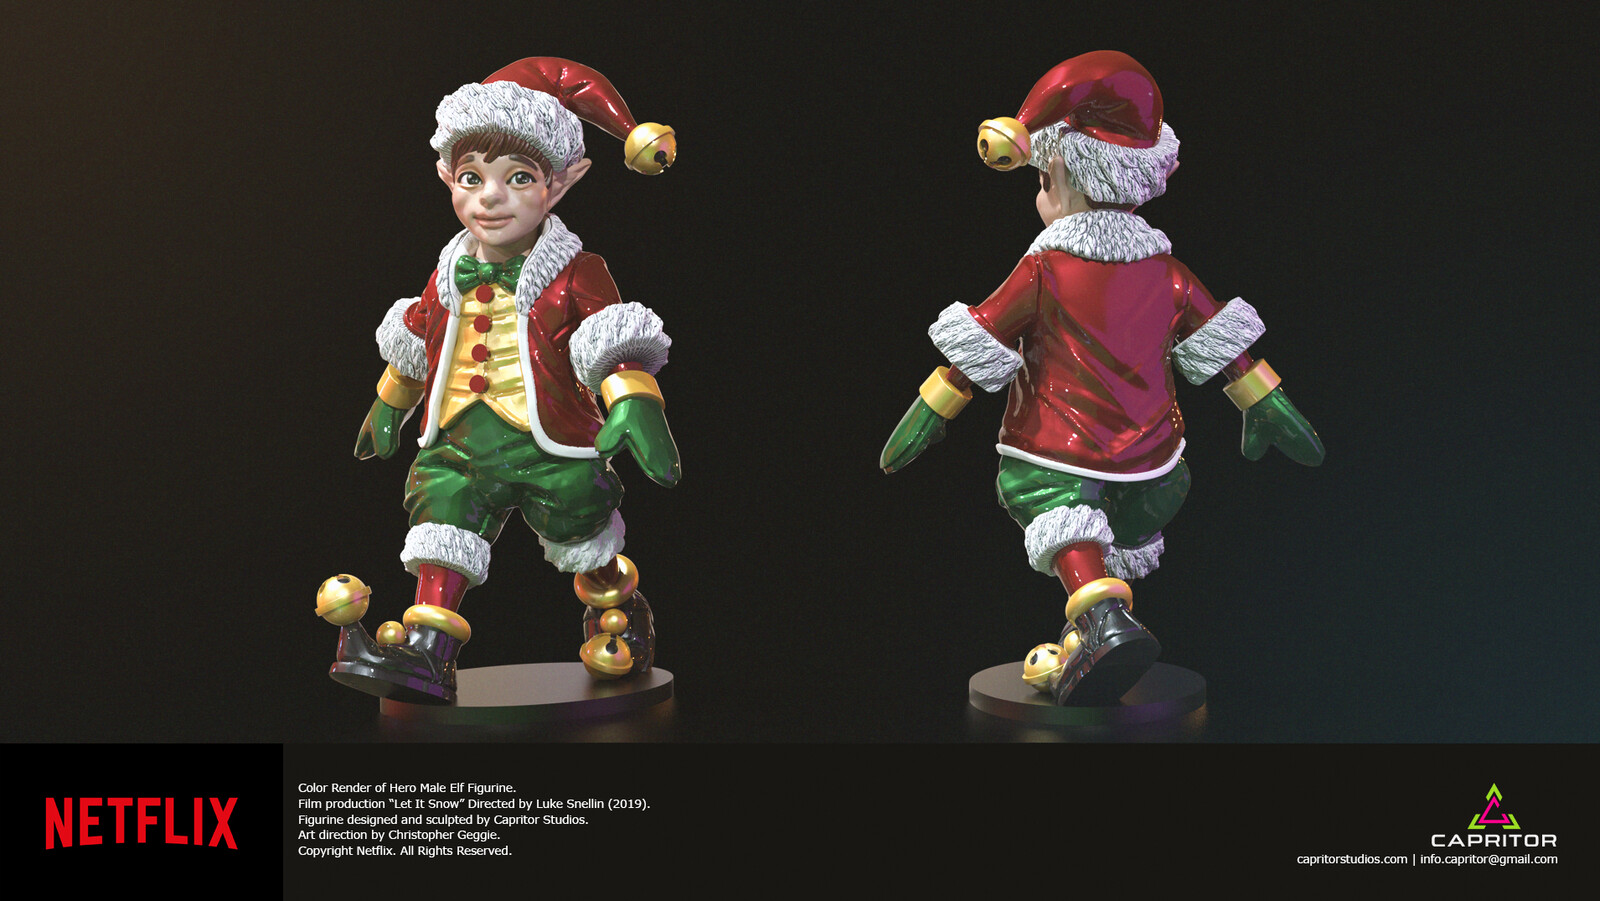 Hero "Male Elf" Figurine Color Render